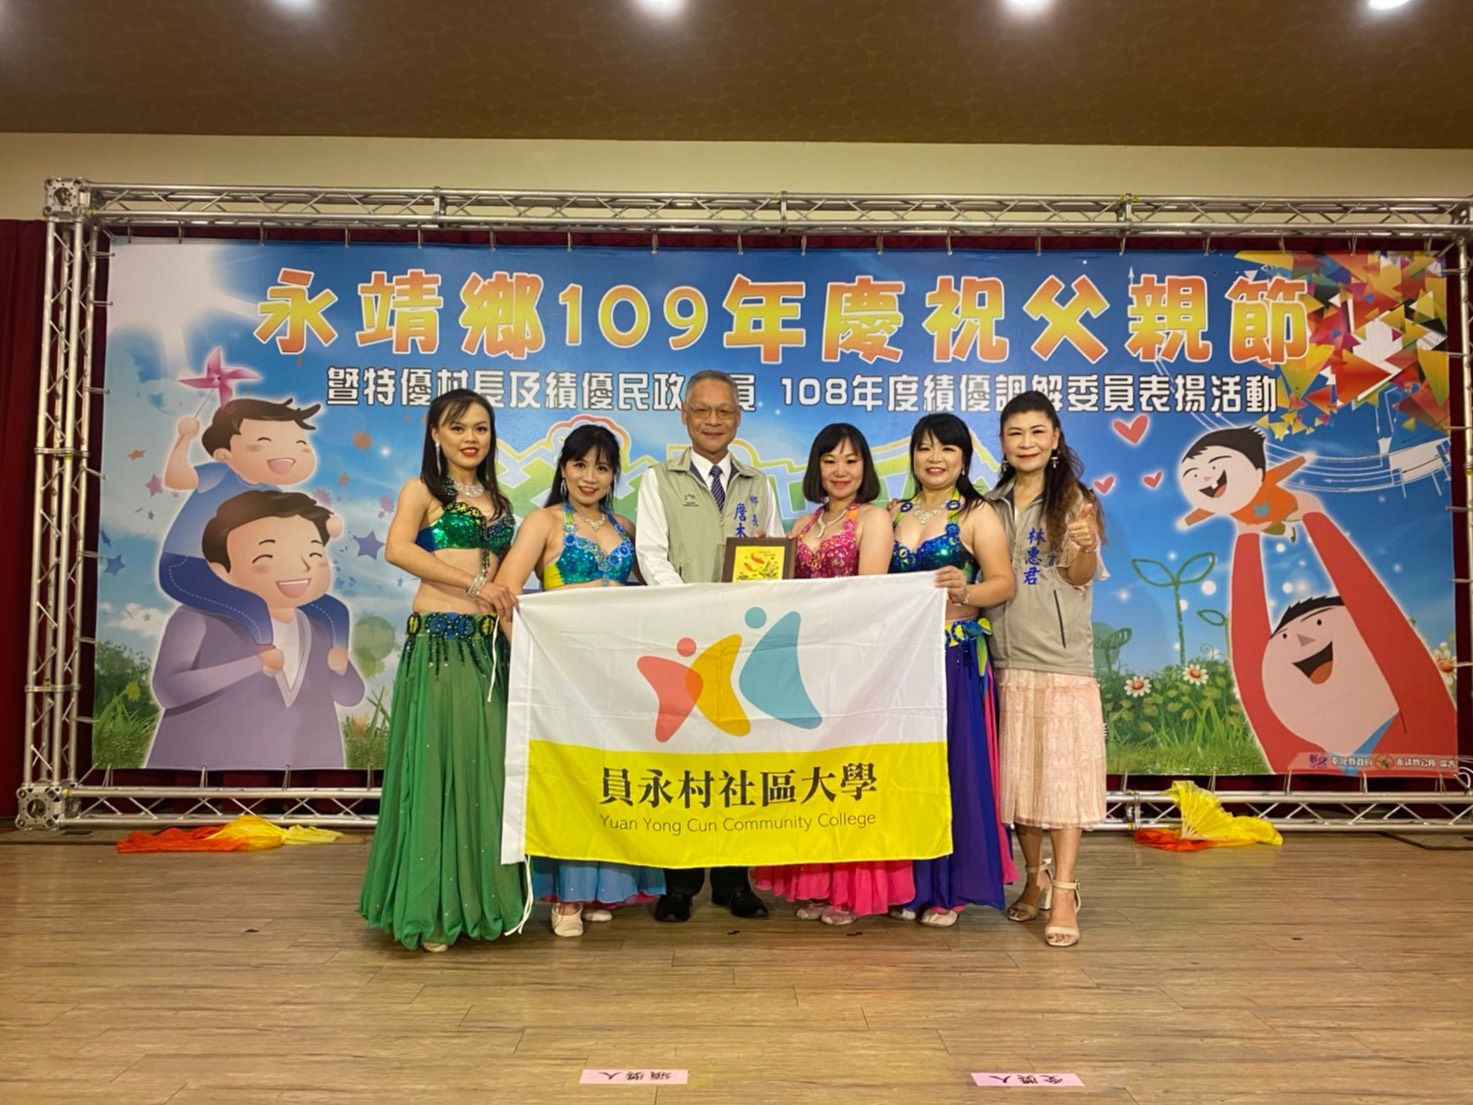 109年模範父親表揚活動員永村社區大學開場表演